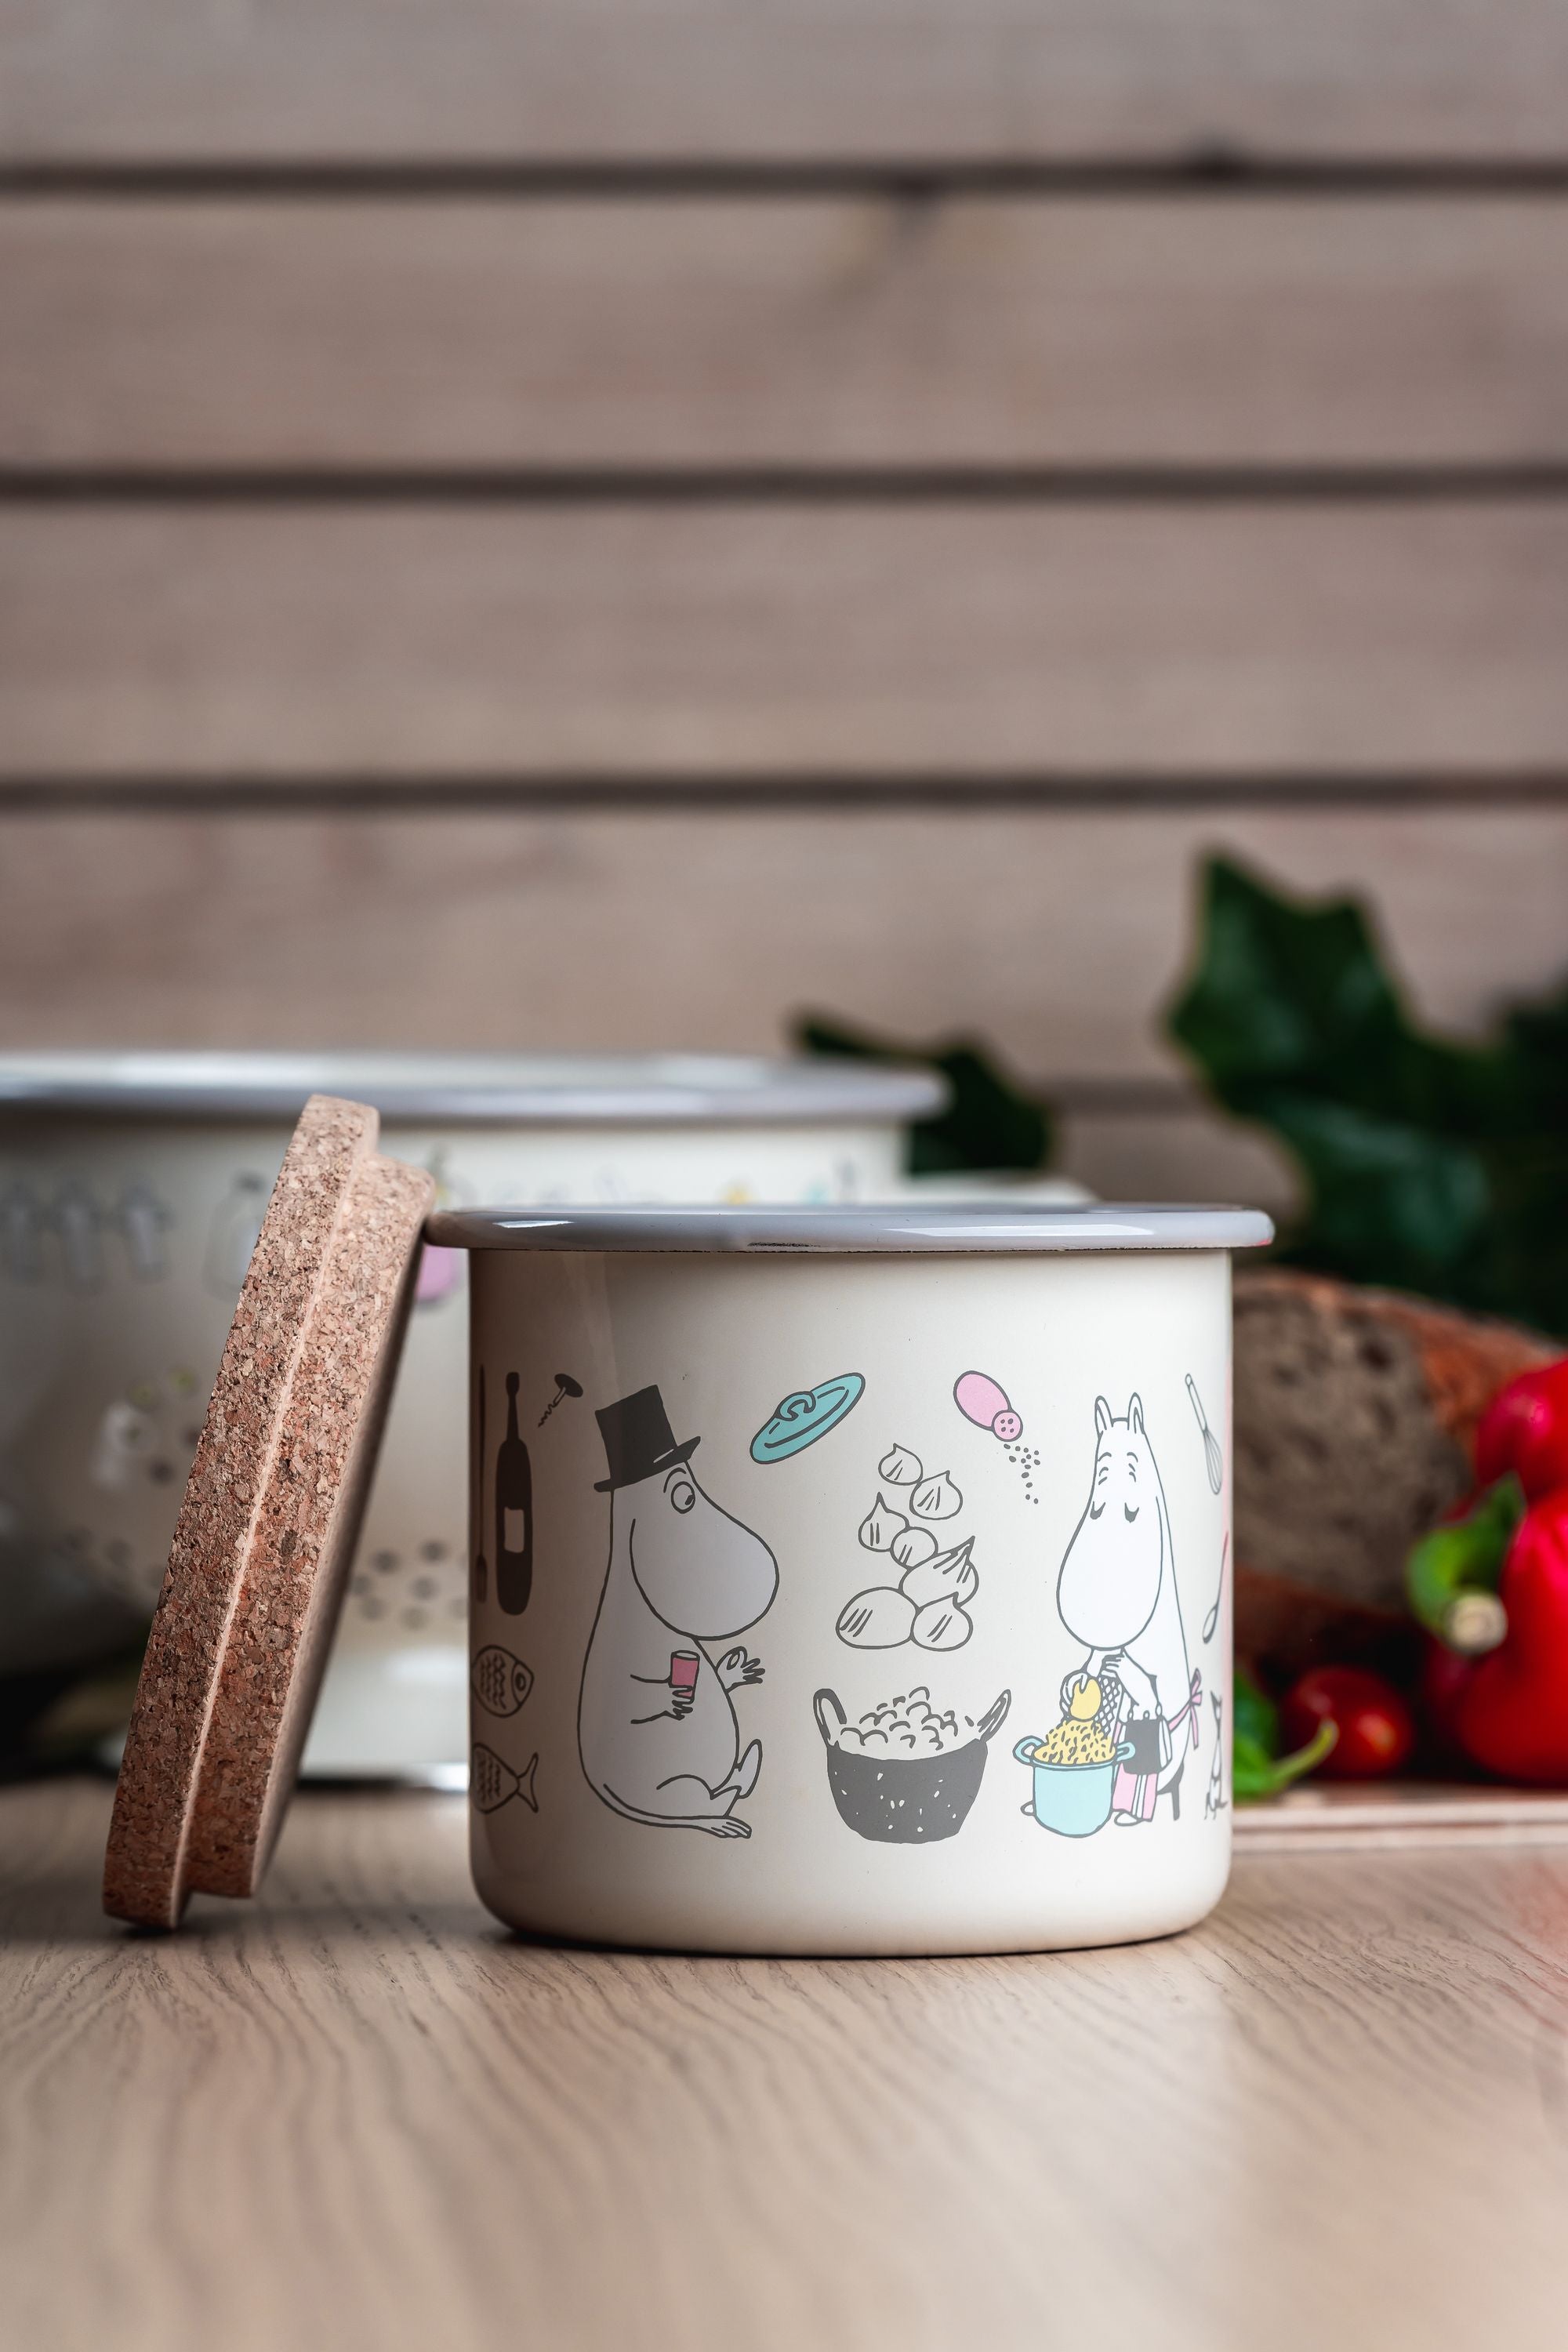 Muurla Moomin Bon Appétit Enamel Jar With Cork Lid